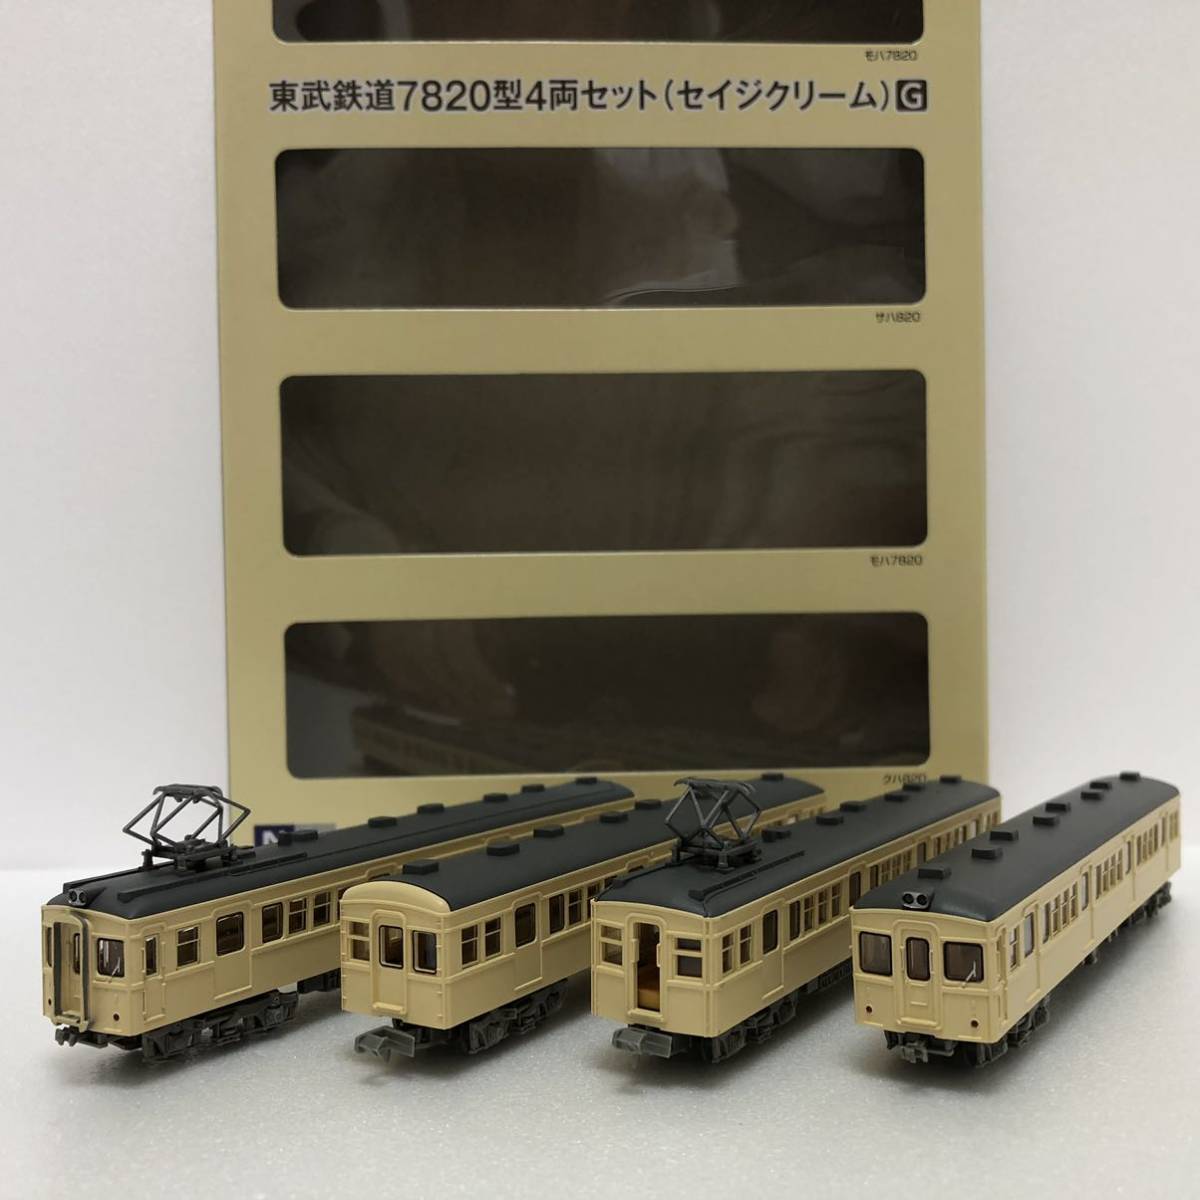 鉄道コレクション 東武鉄道 7820型 4両セット （セイジクリーム）G 1箱 東武 7800 事業者限定品 鉄コレ トミーテック TOMYTEC